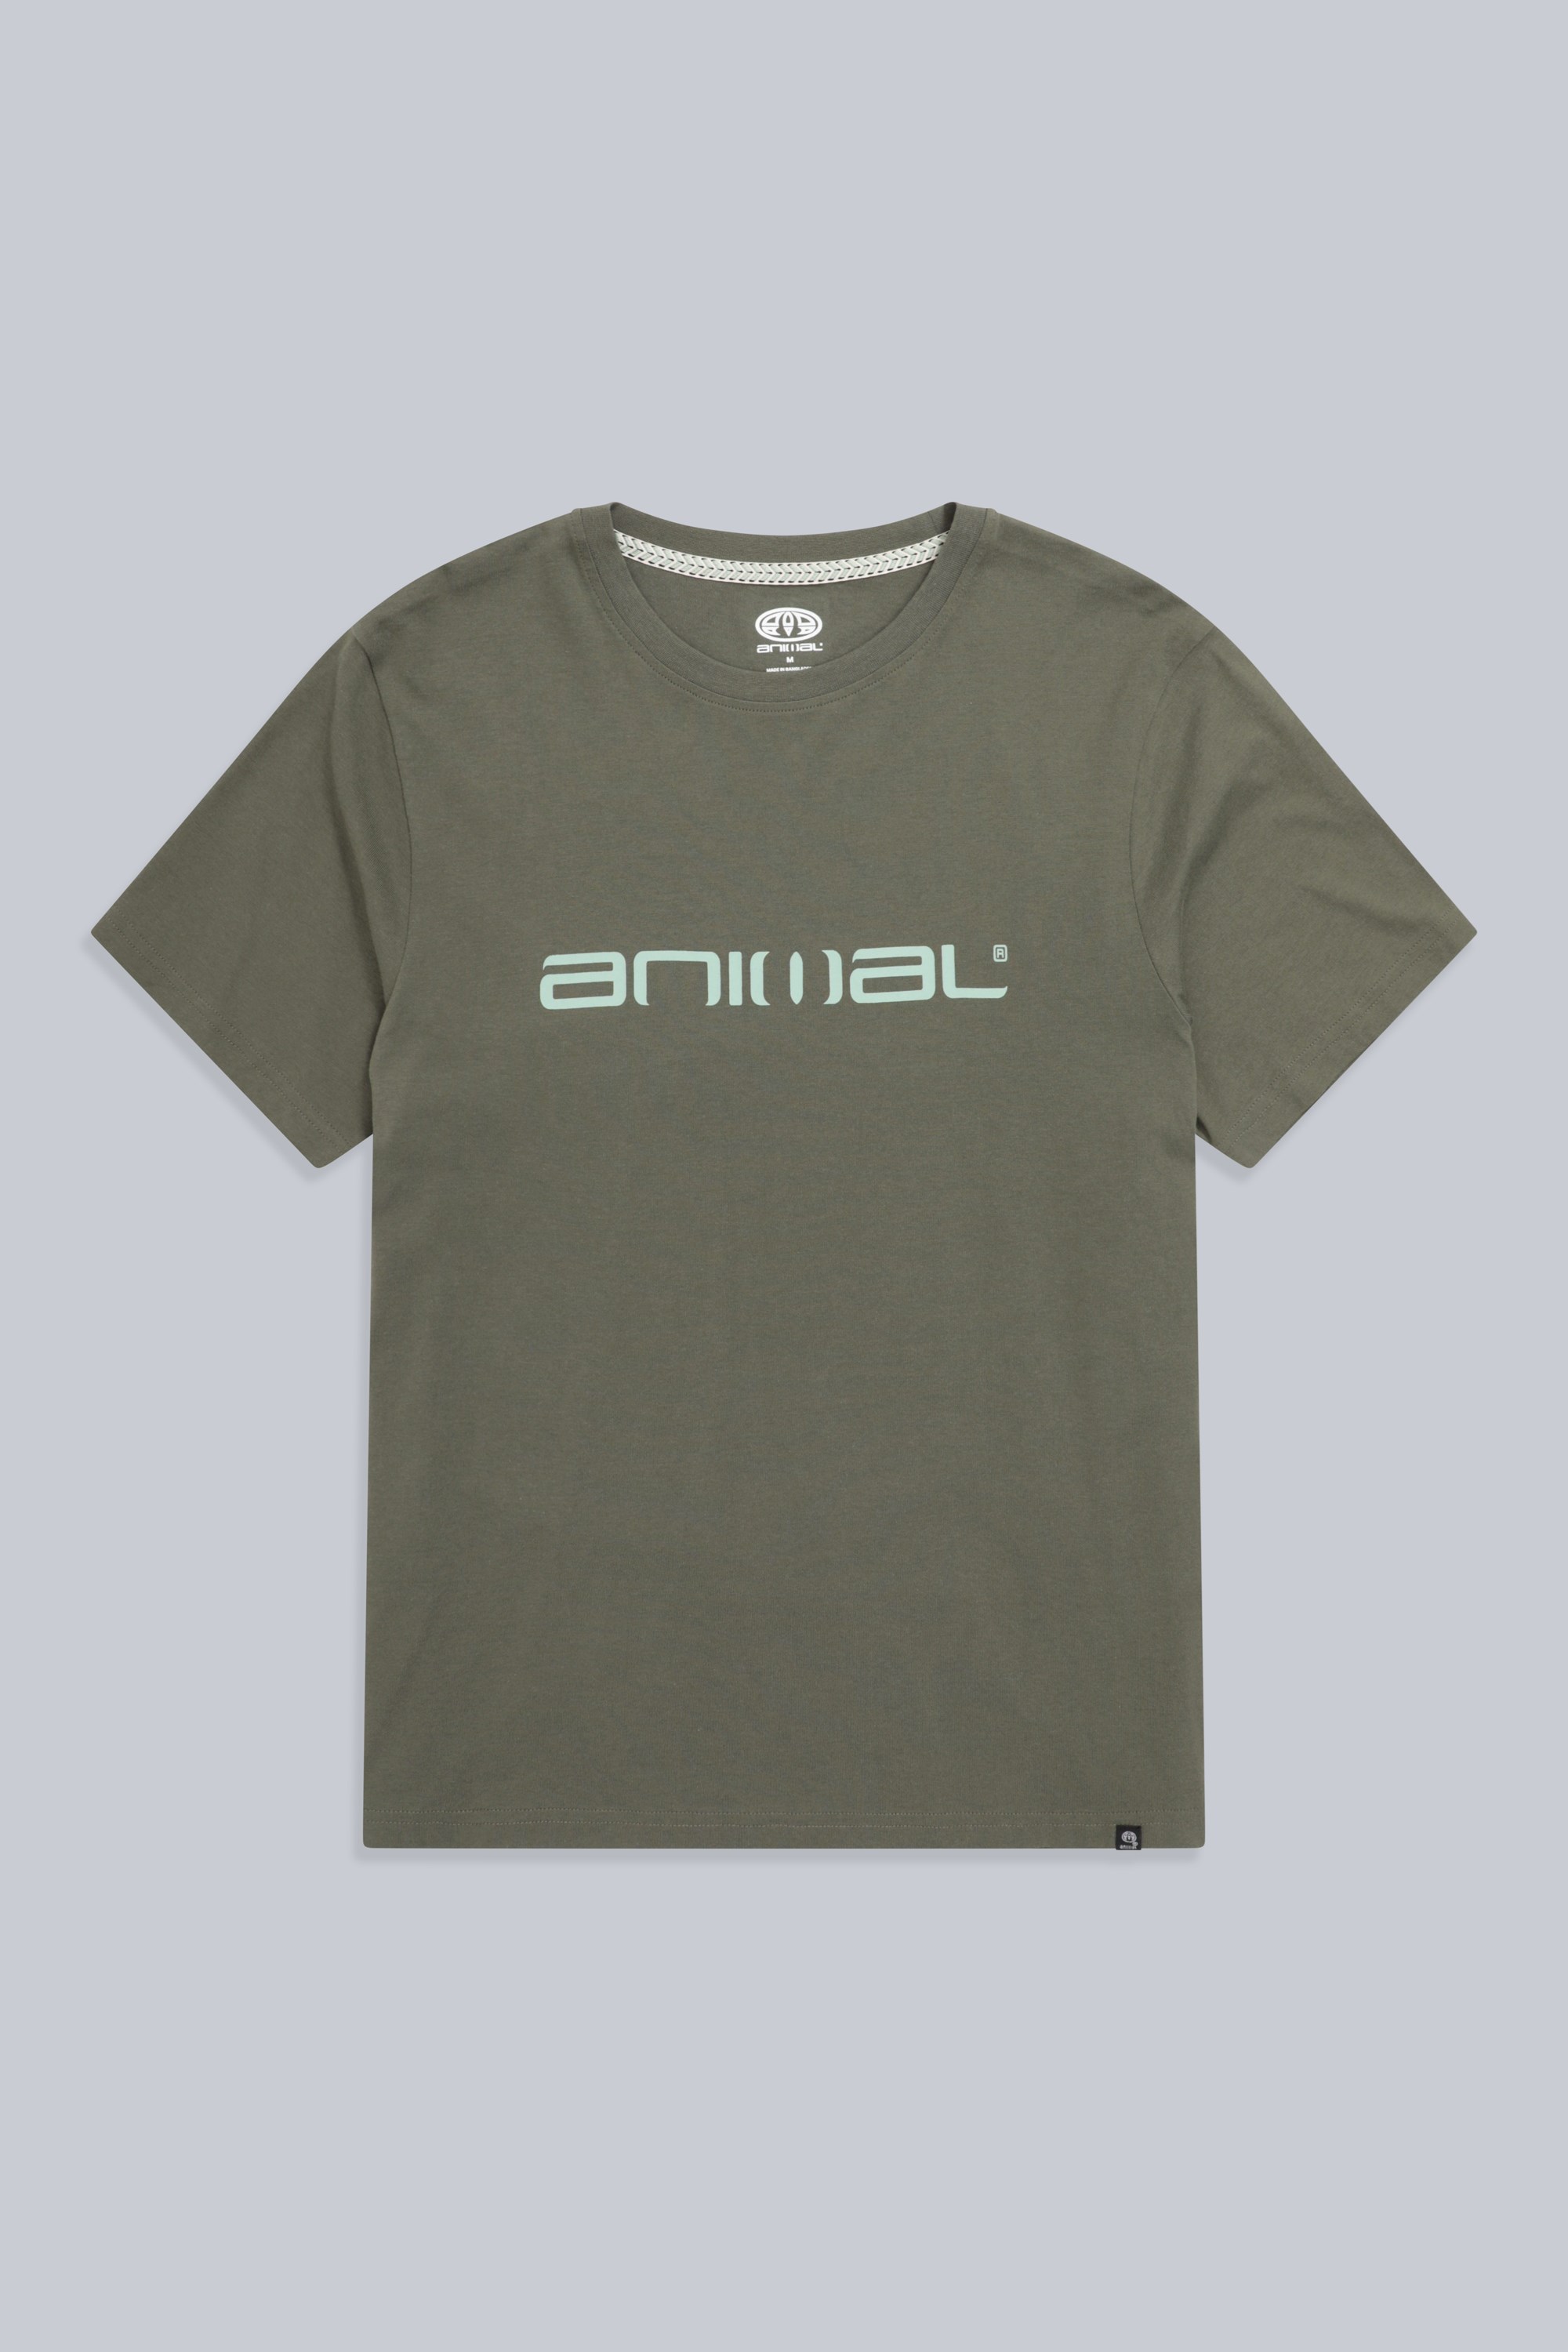 Animal Classico Bio-Baumwoll Herren T-Shirt - Khaki